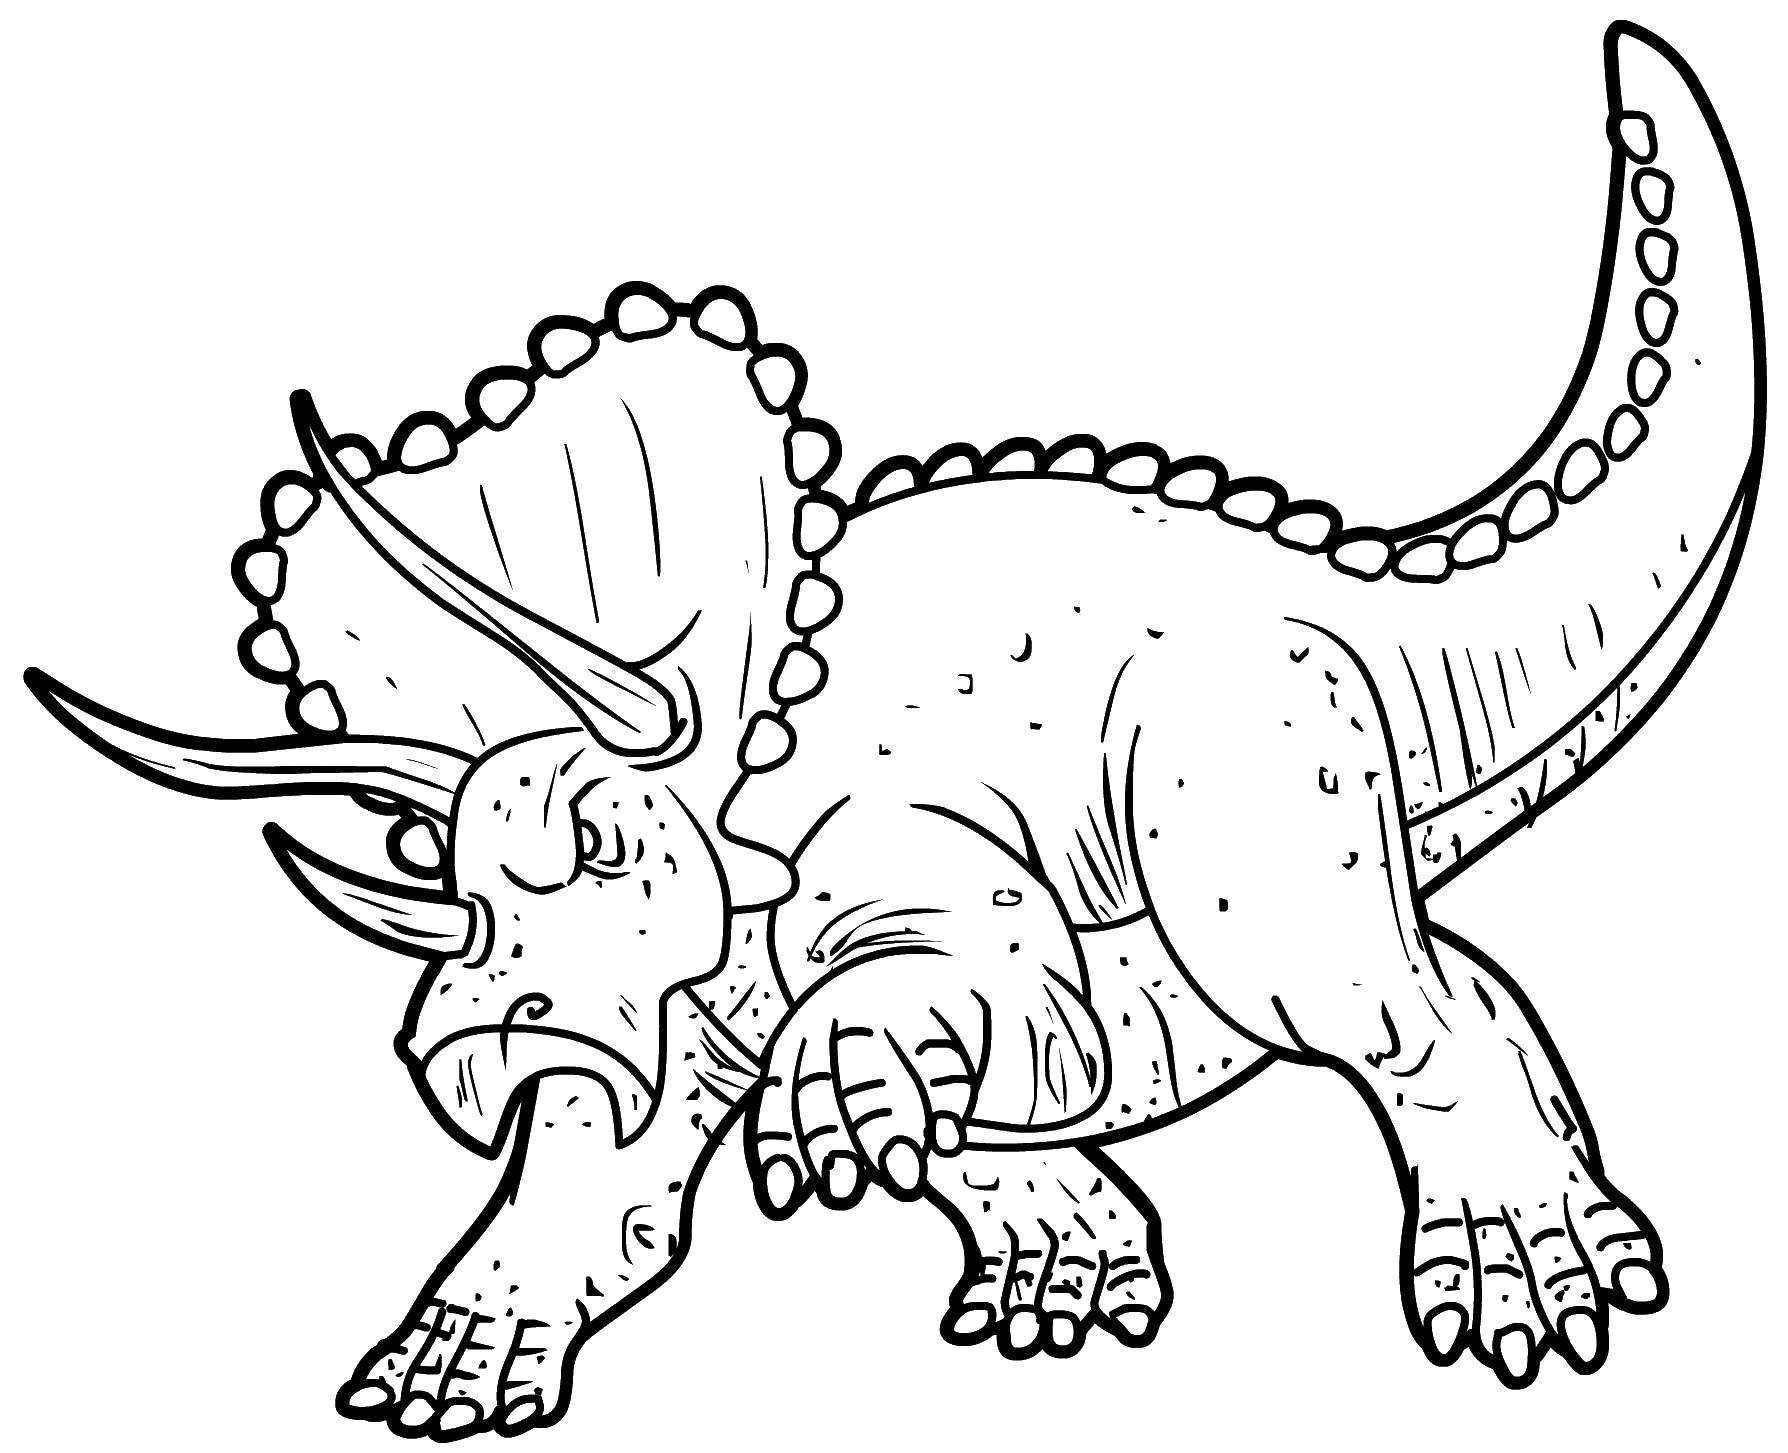 Раскраски Динозавры Раскраски с динозаврами для мальчиков 75 раскрасок с динозаврами для детей 3-10 лет разного уровня сложности